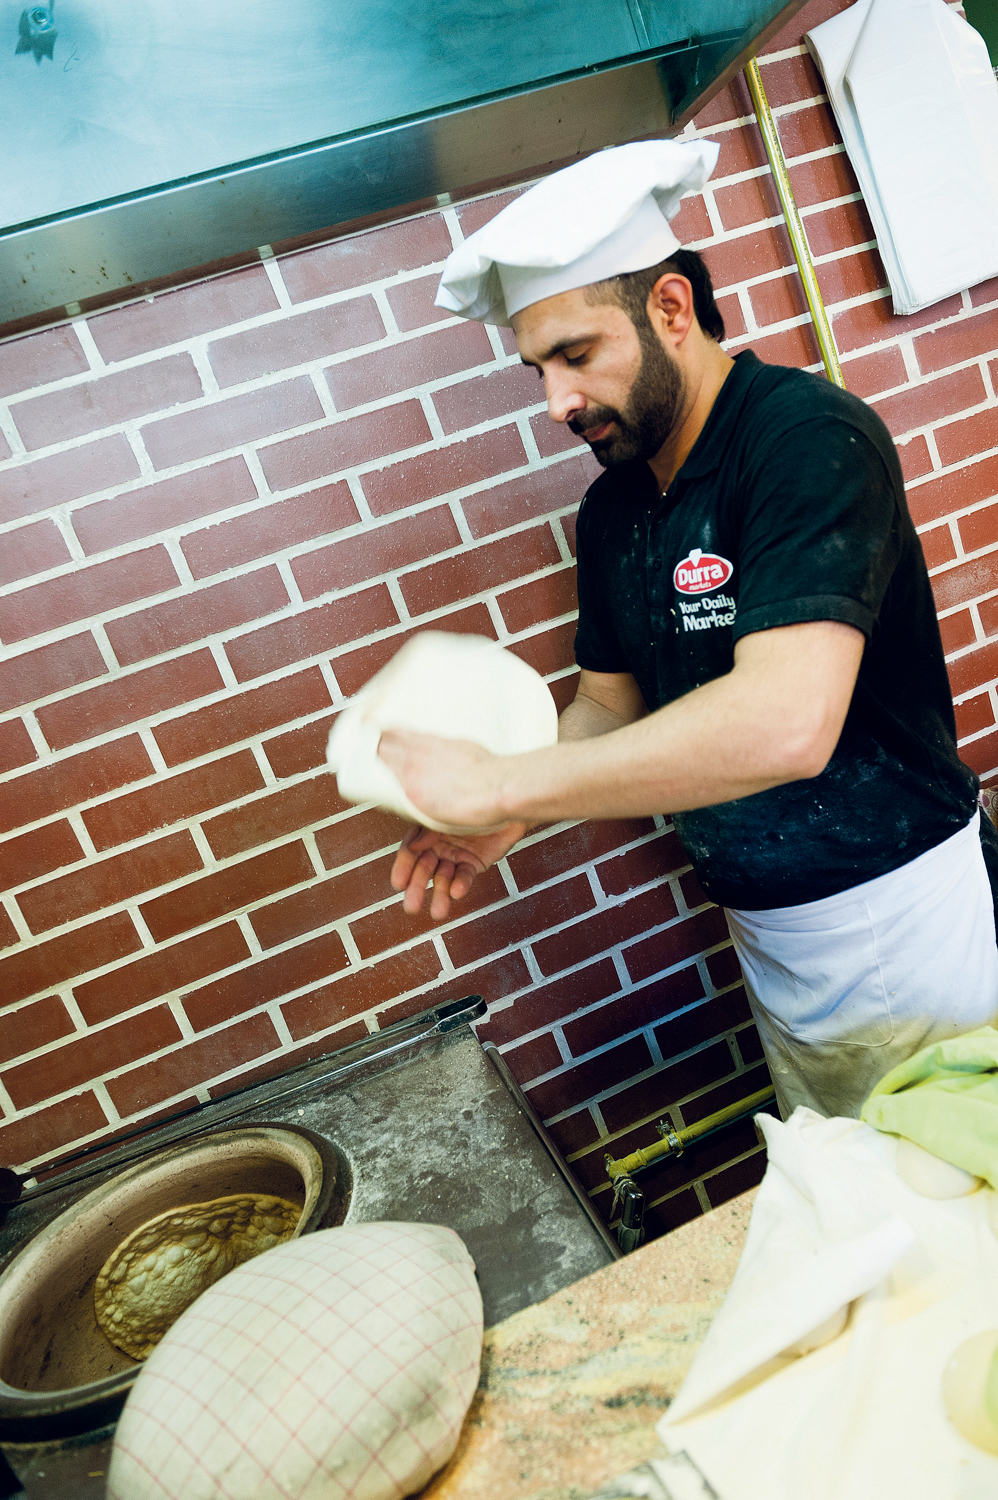 Durra ist der erste syrische Supermarkt in Österreich. Neben Lebensmitteln werden hier frische Mehlspeisen und Süßigkeiten zubereitet. Foto: Christoph Liebentritt